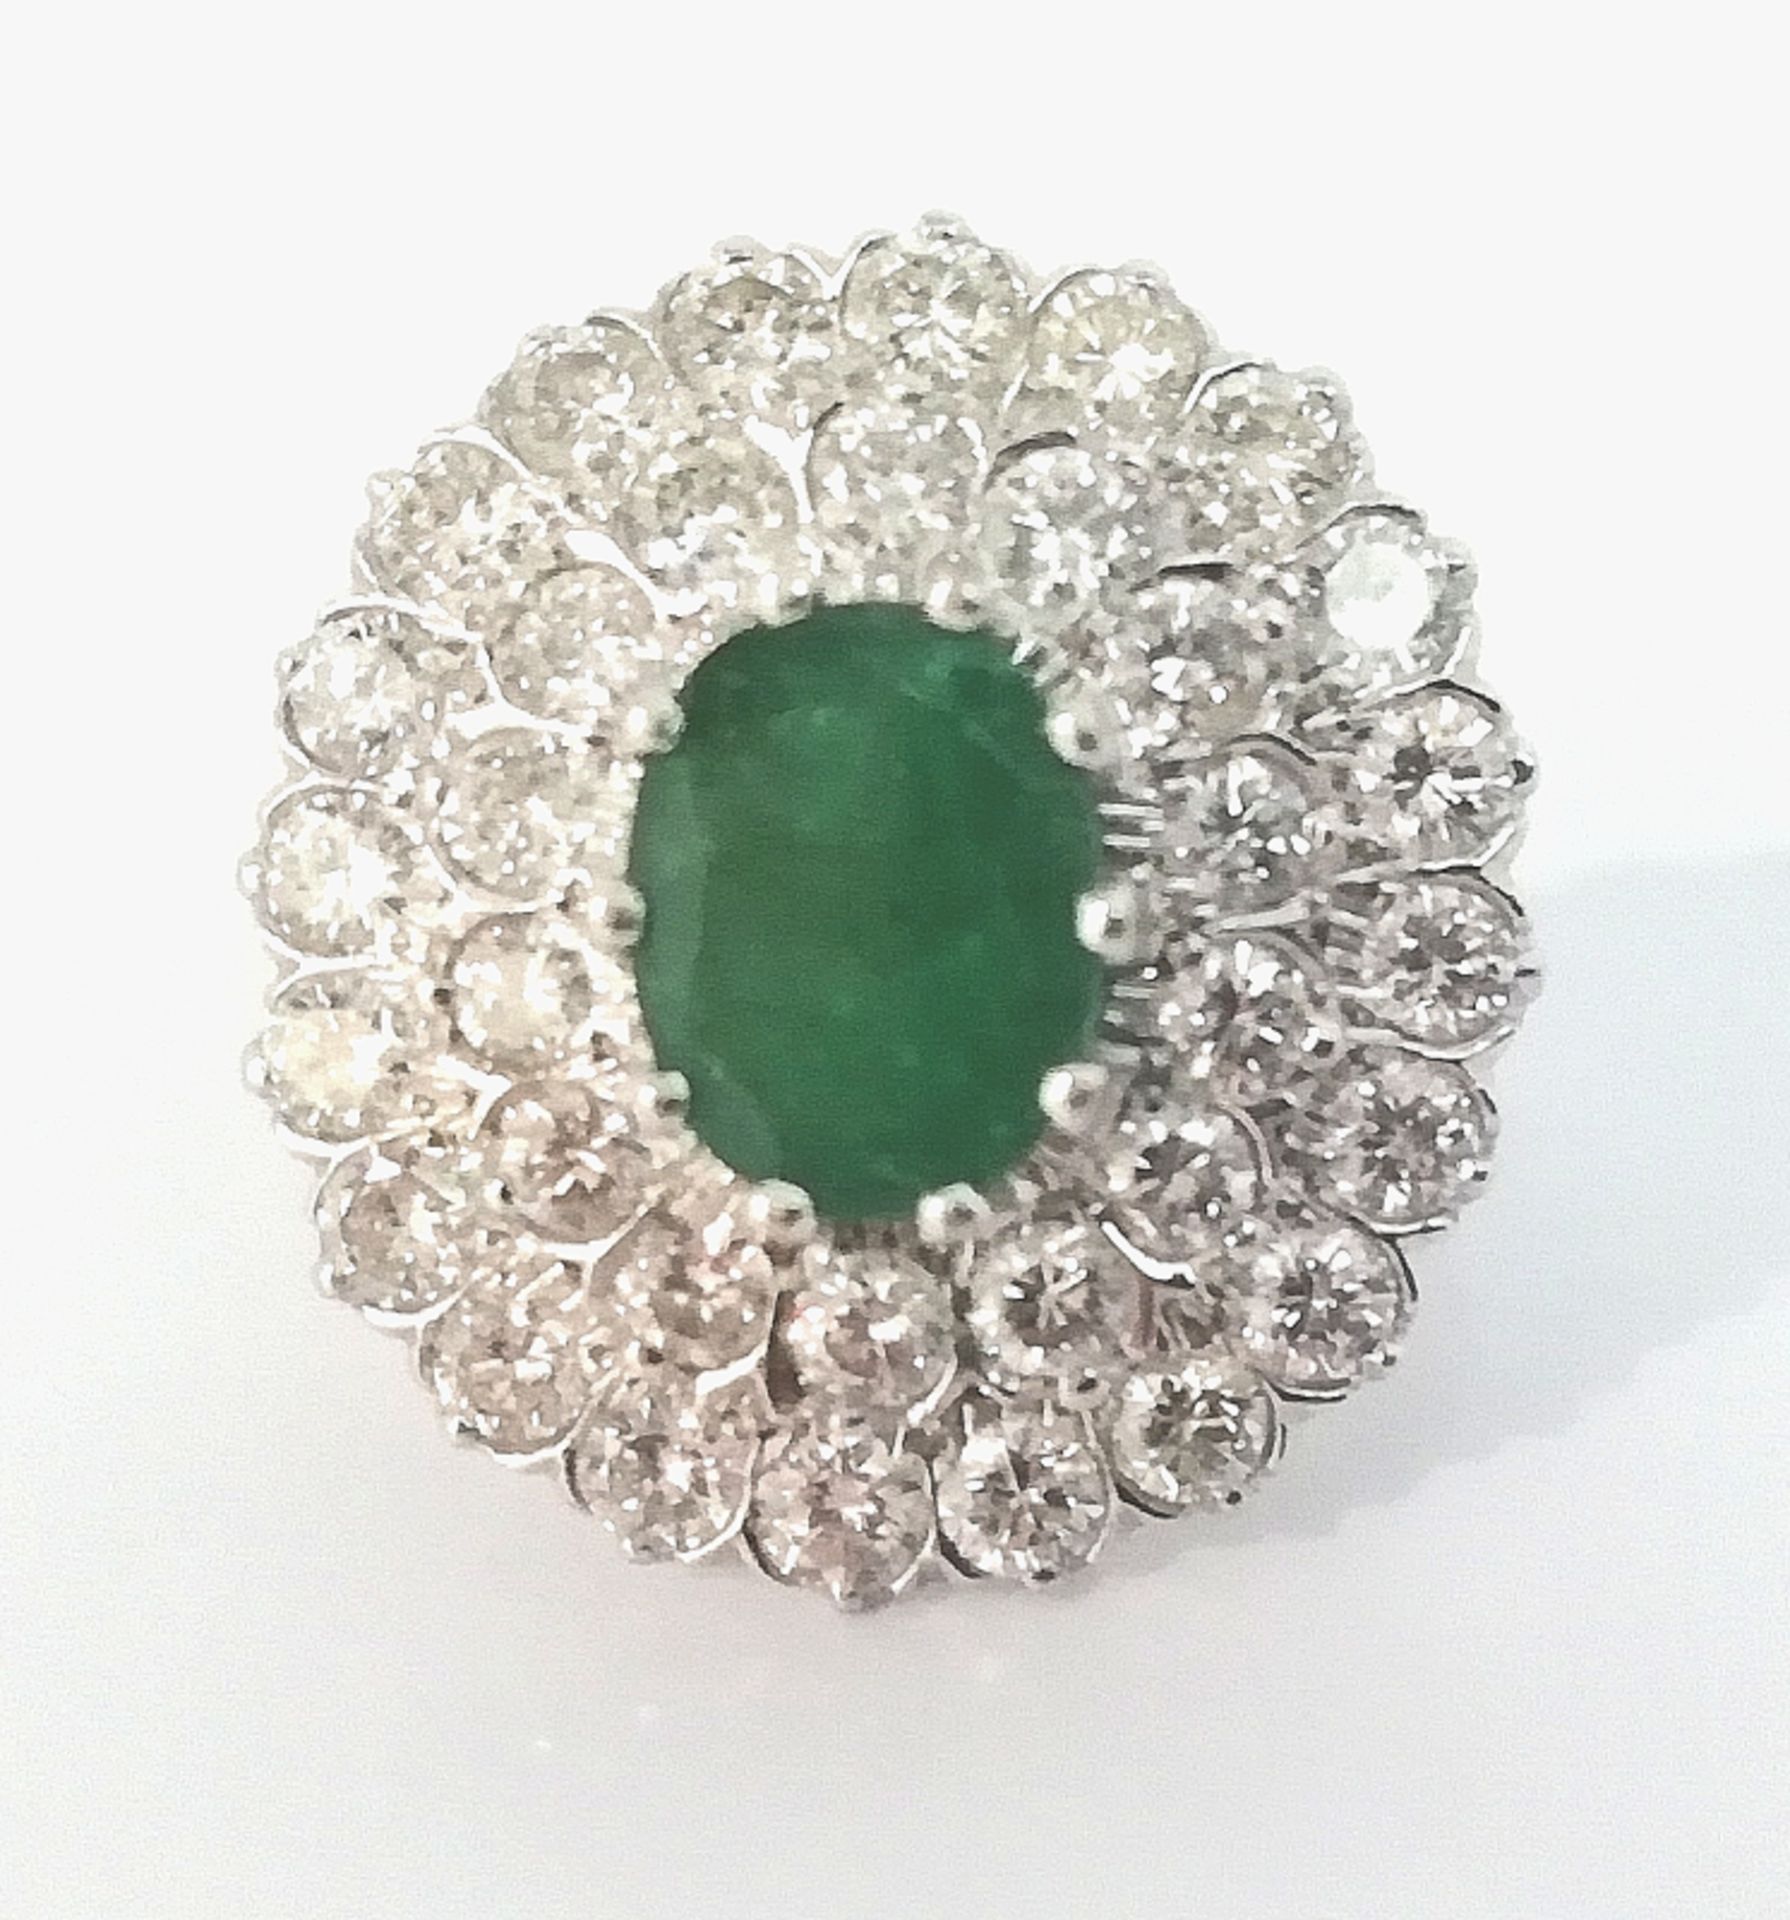 Smaragd Brillant Damenring